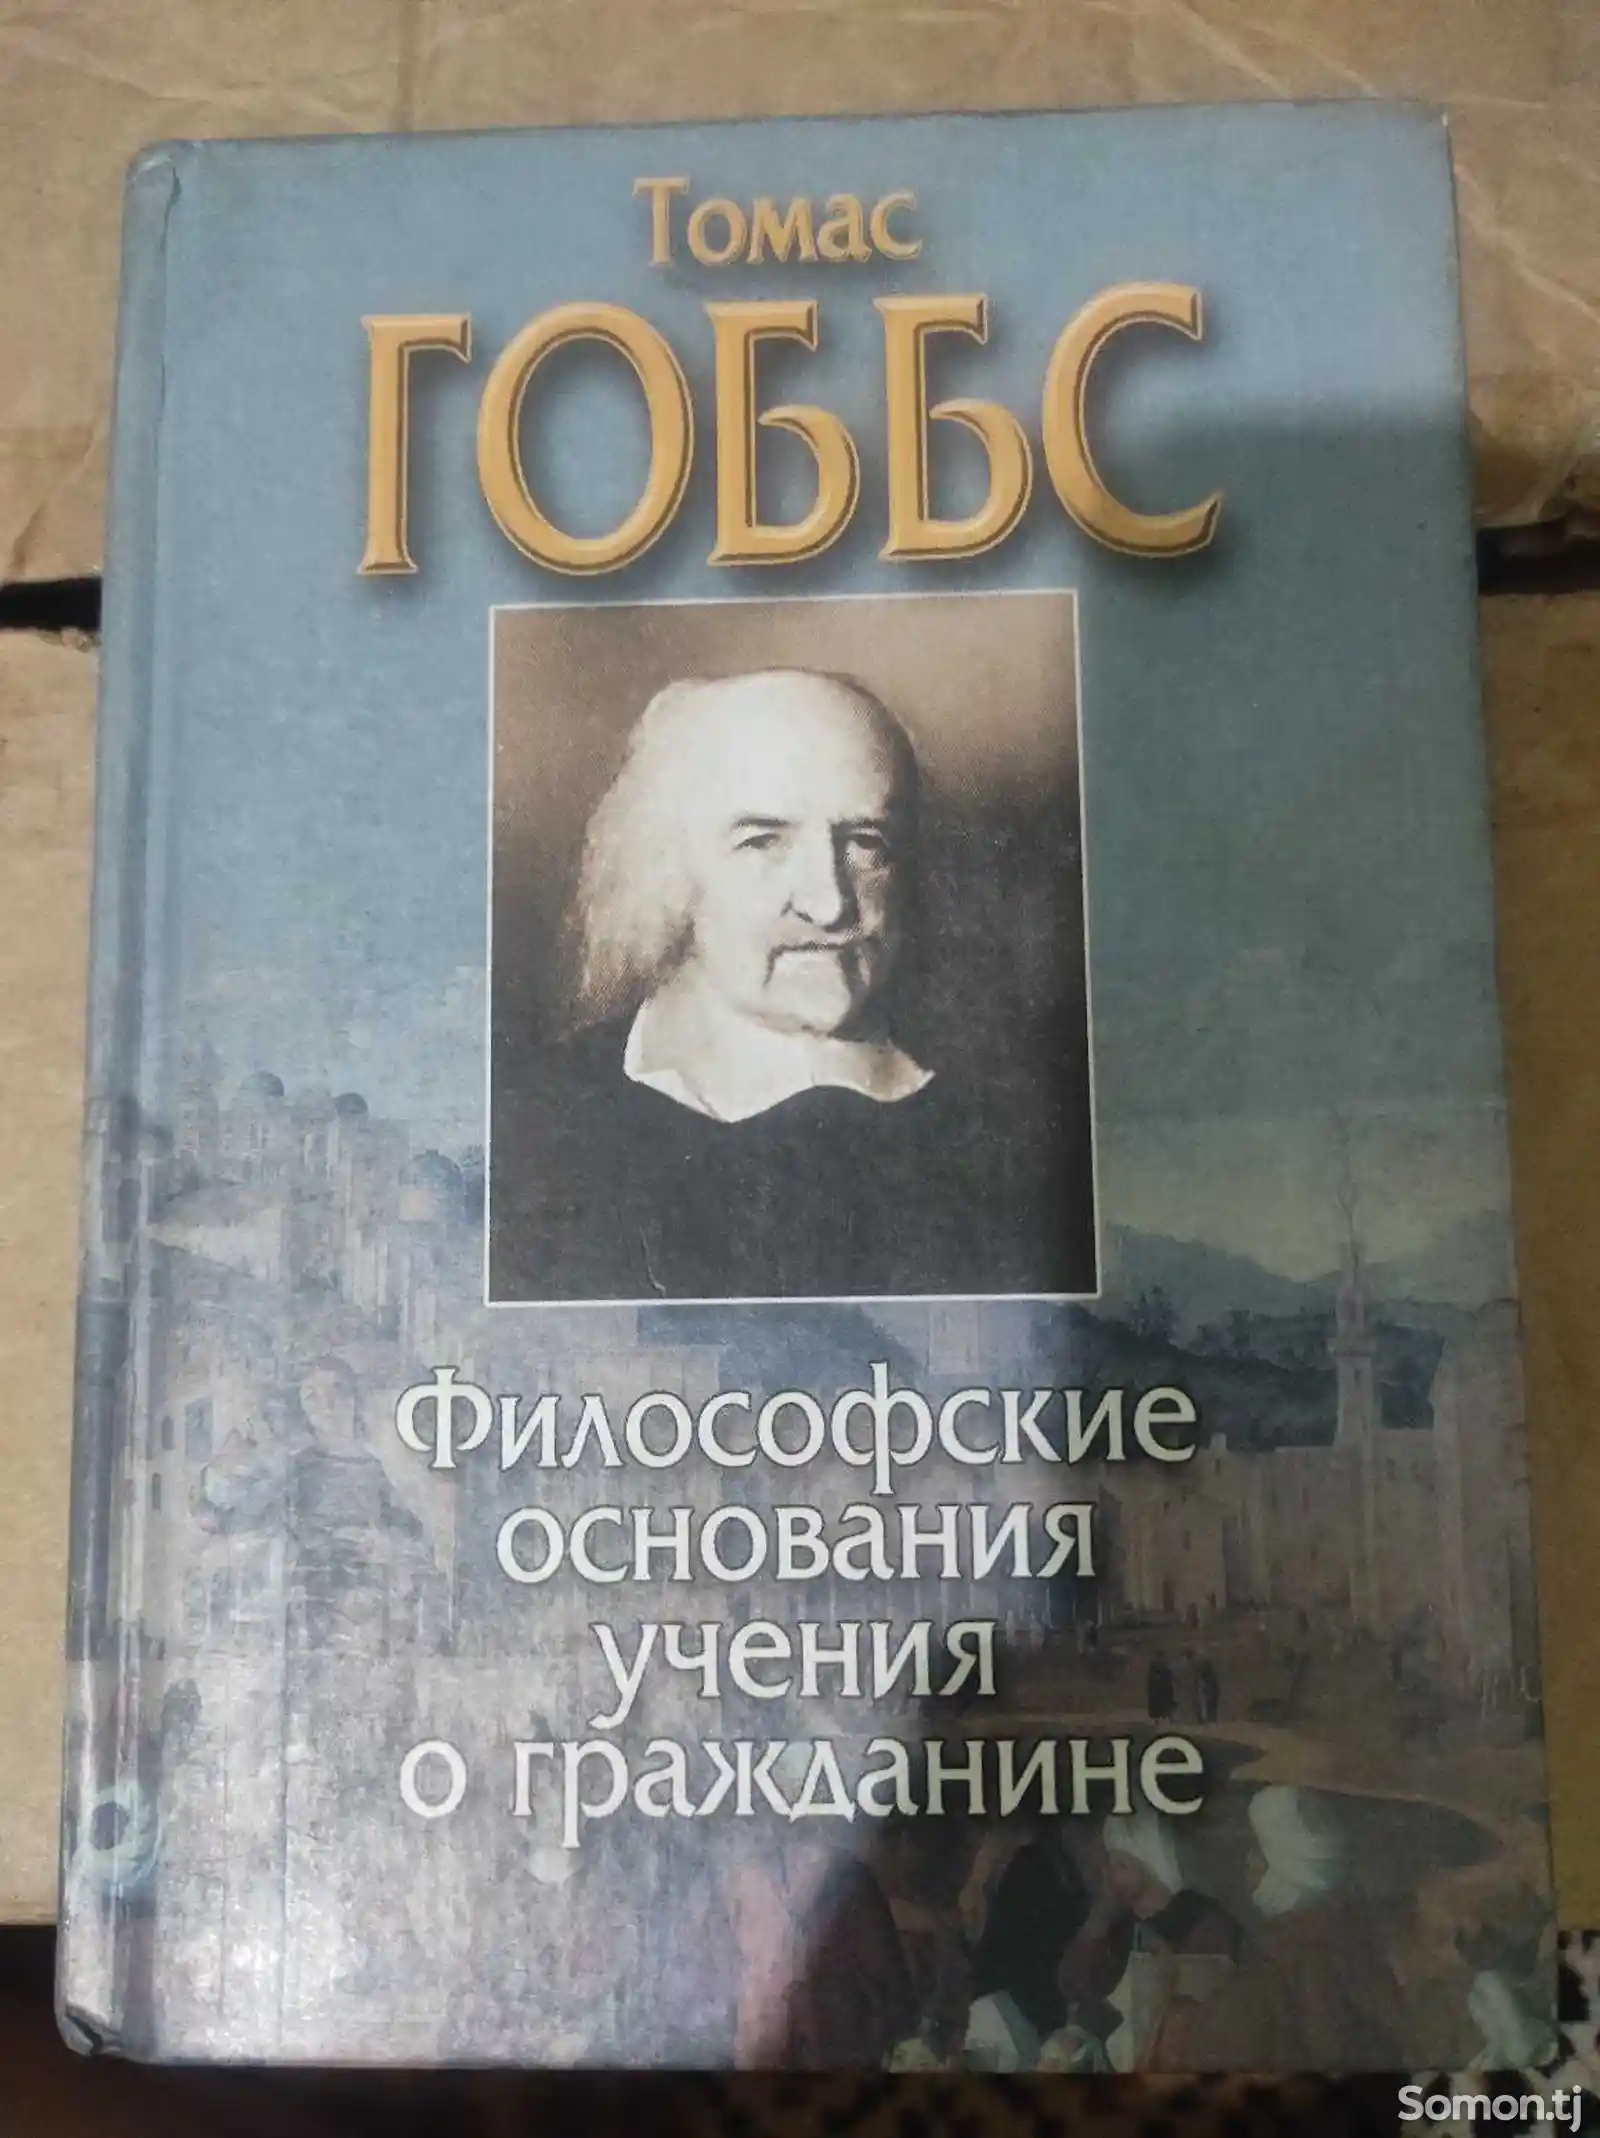 Книга по философии